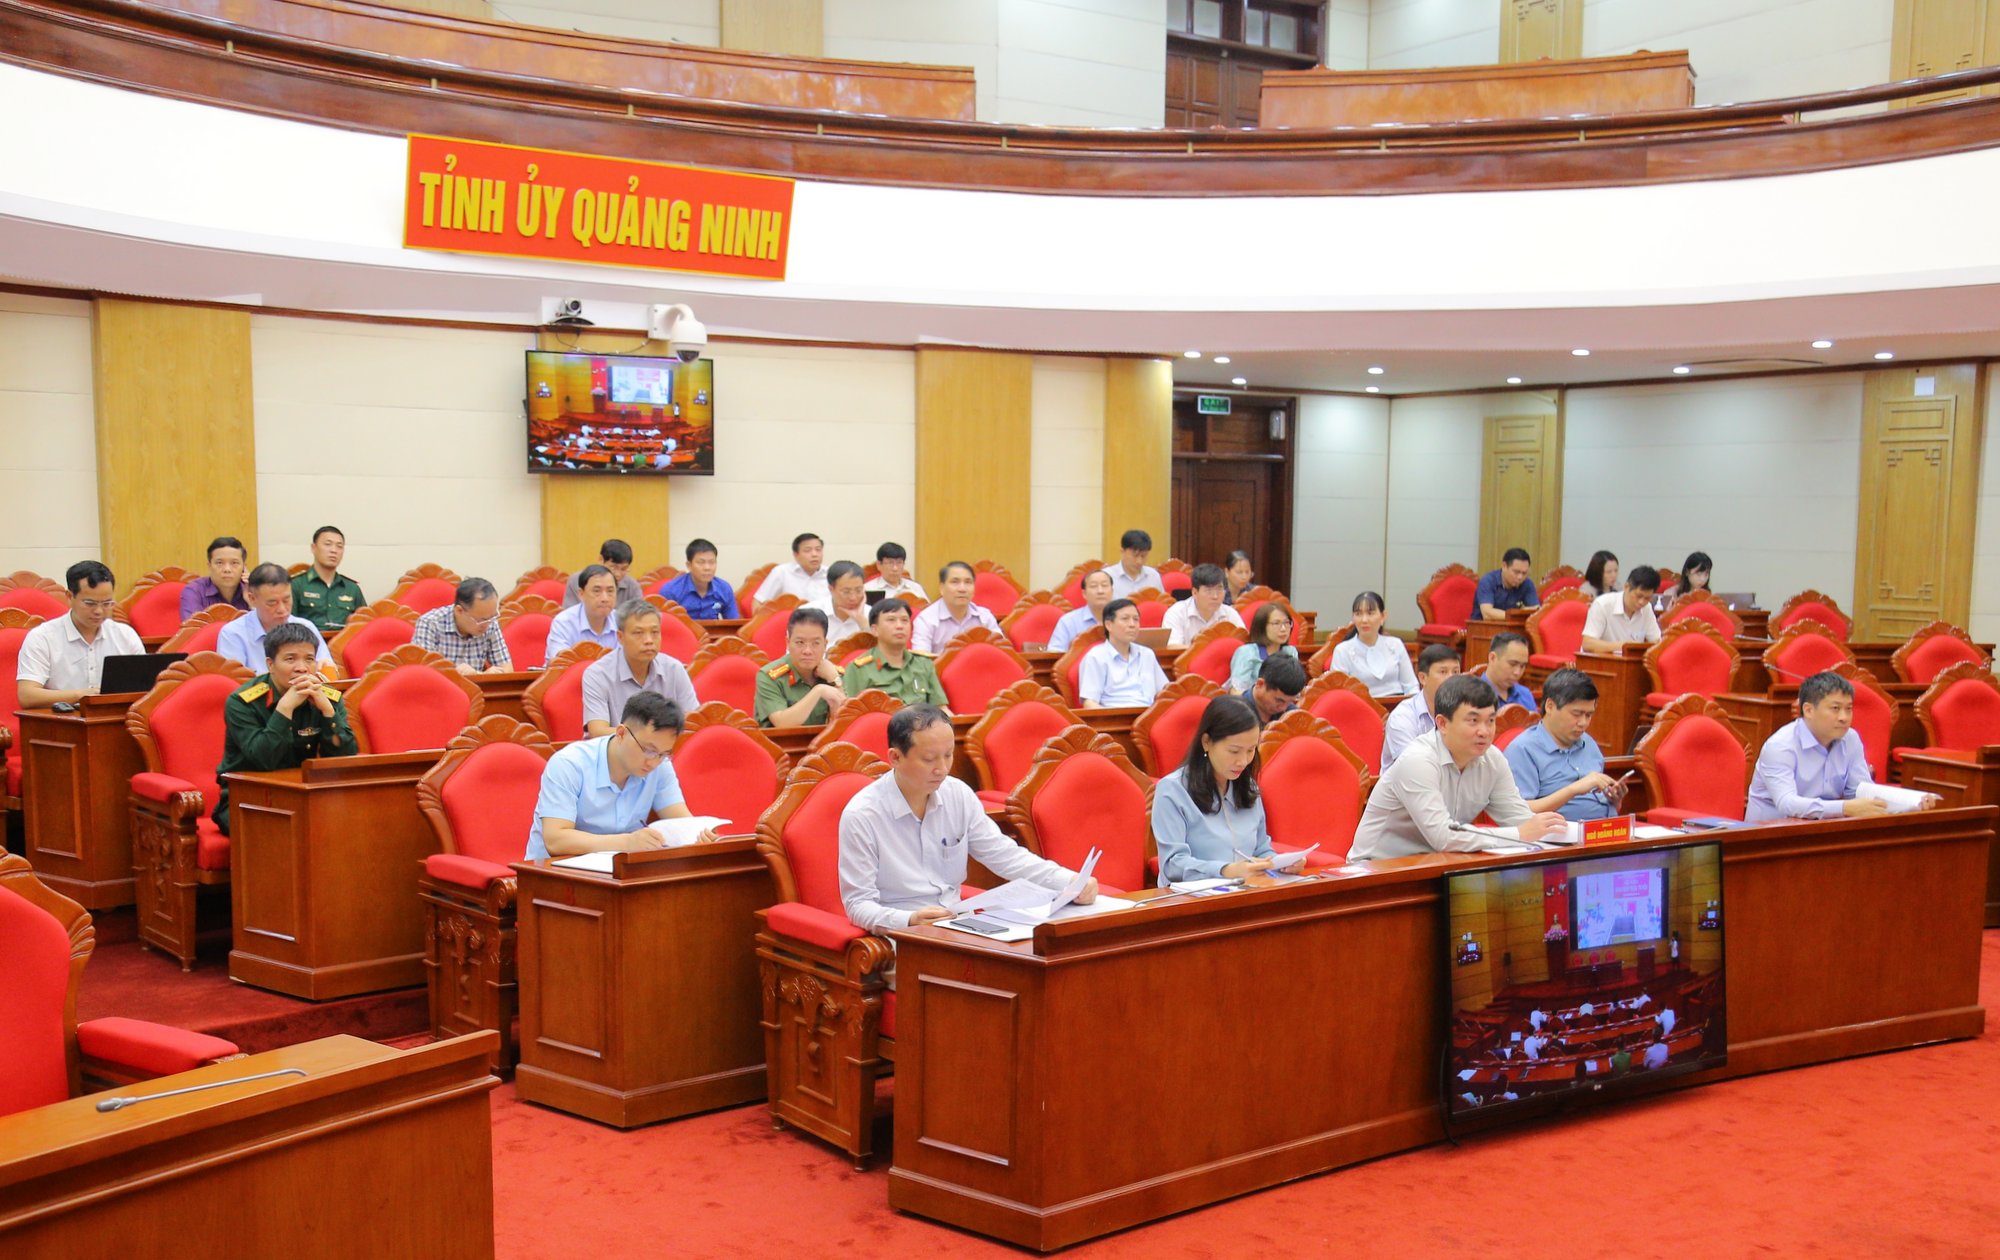 Quang cảnh buổi hội nghị tại điểm cầu Quảng Ninh.